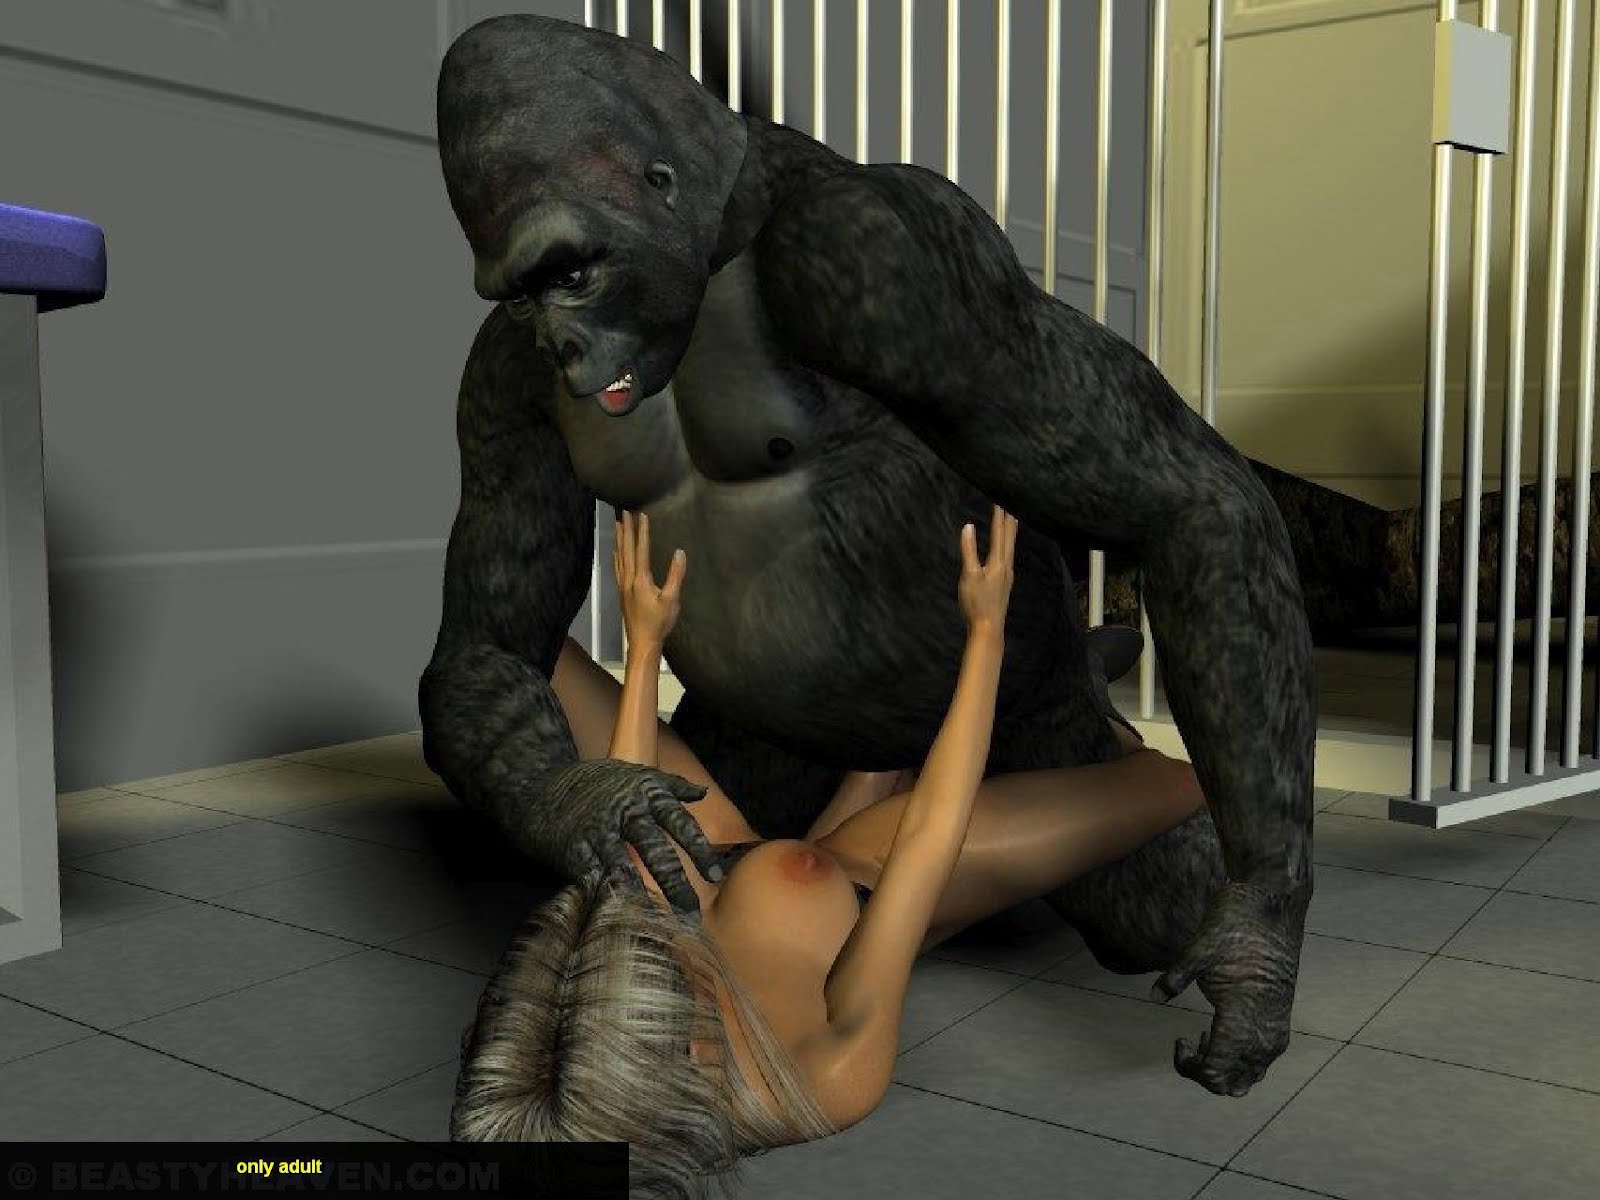 1600px x 1200px - Gorilla Sex Porn | Sex Pictures Pass